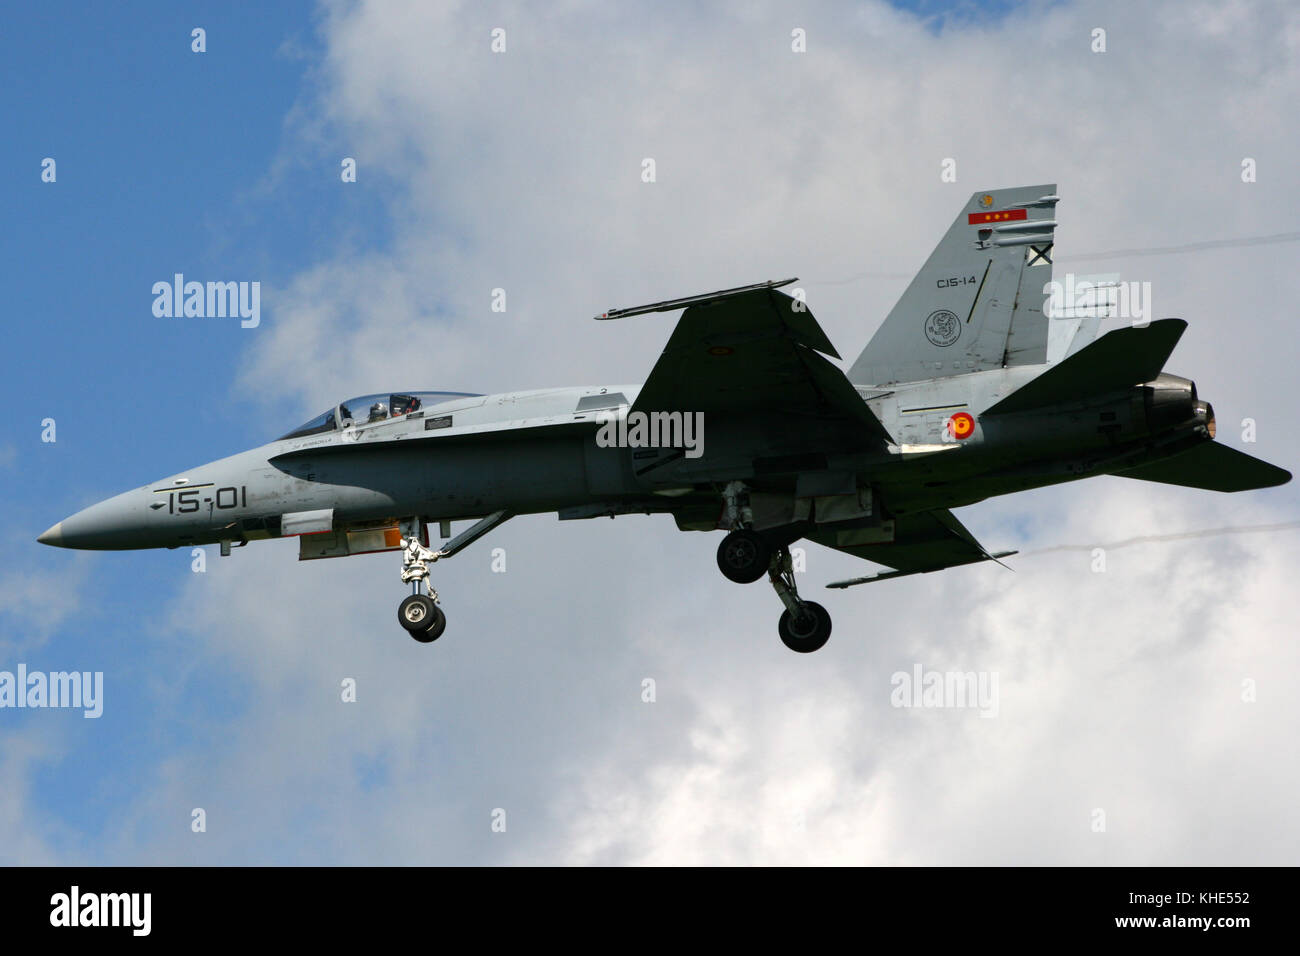 VOLKEL, PAYS-BAS - JUIN 18 : avion de chasse Hornet F/A-18 de la Force aérienne espagnole sur la base aérienne de Volkel. Banque D'Images